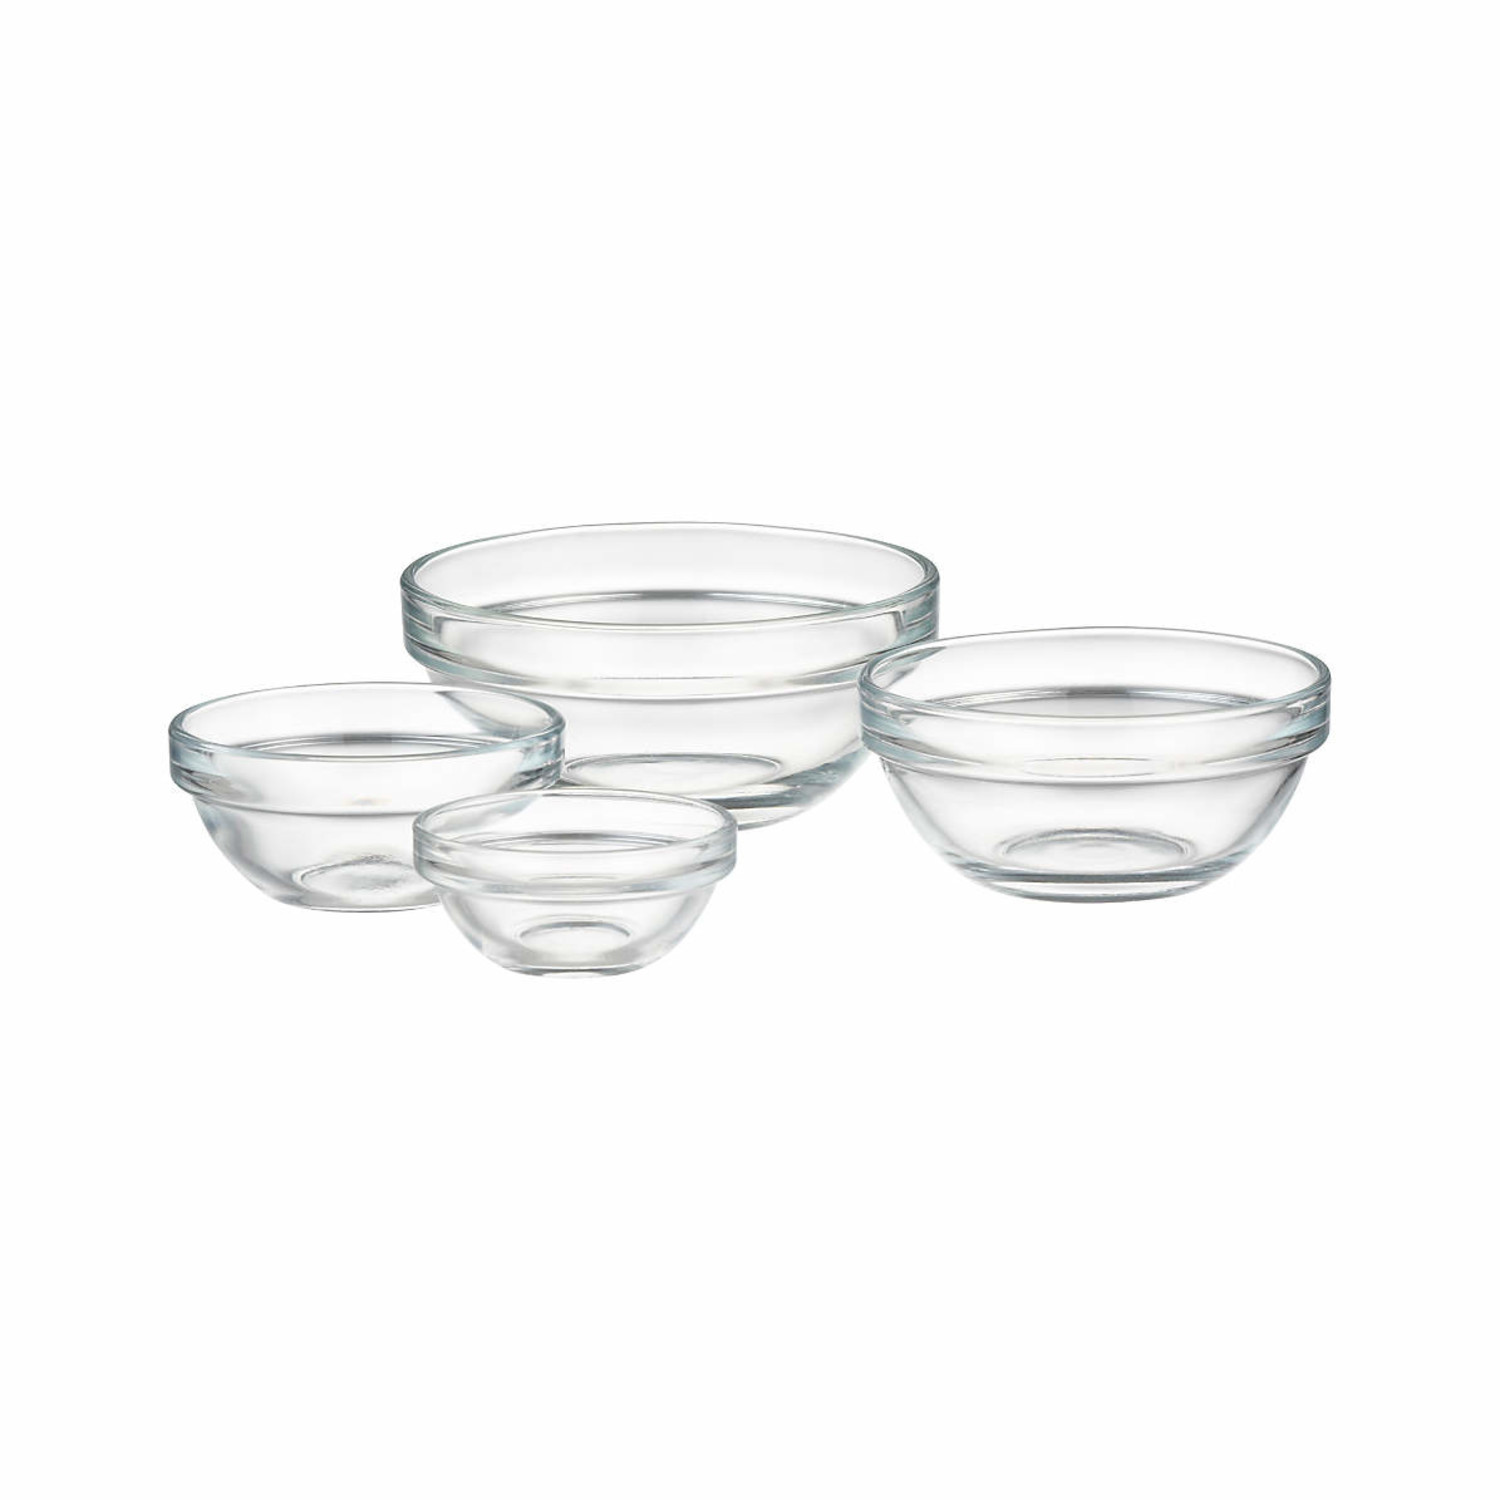 https://cdn.shoplightspeed.com/shops/633447/files/42724637/1500x4000x3/duralex-1-oz-duralex-glass-prep-bowl.jpg